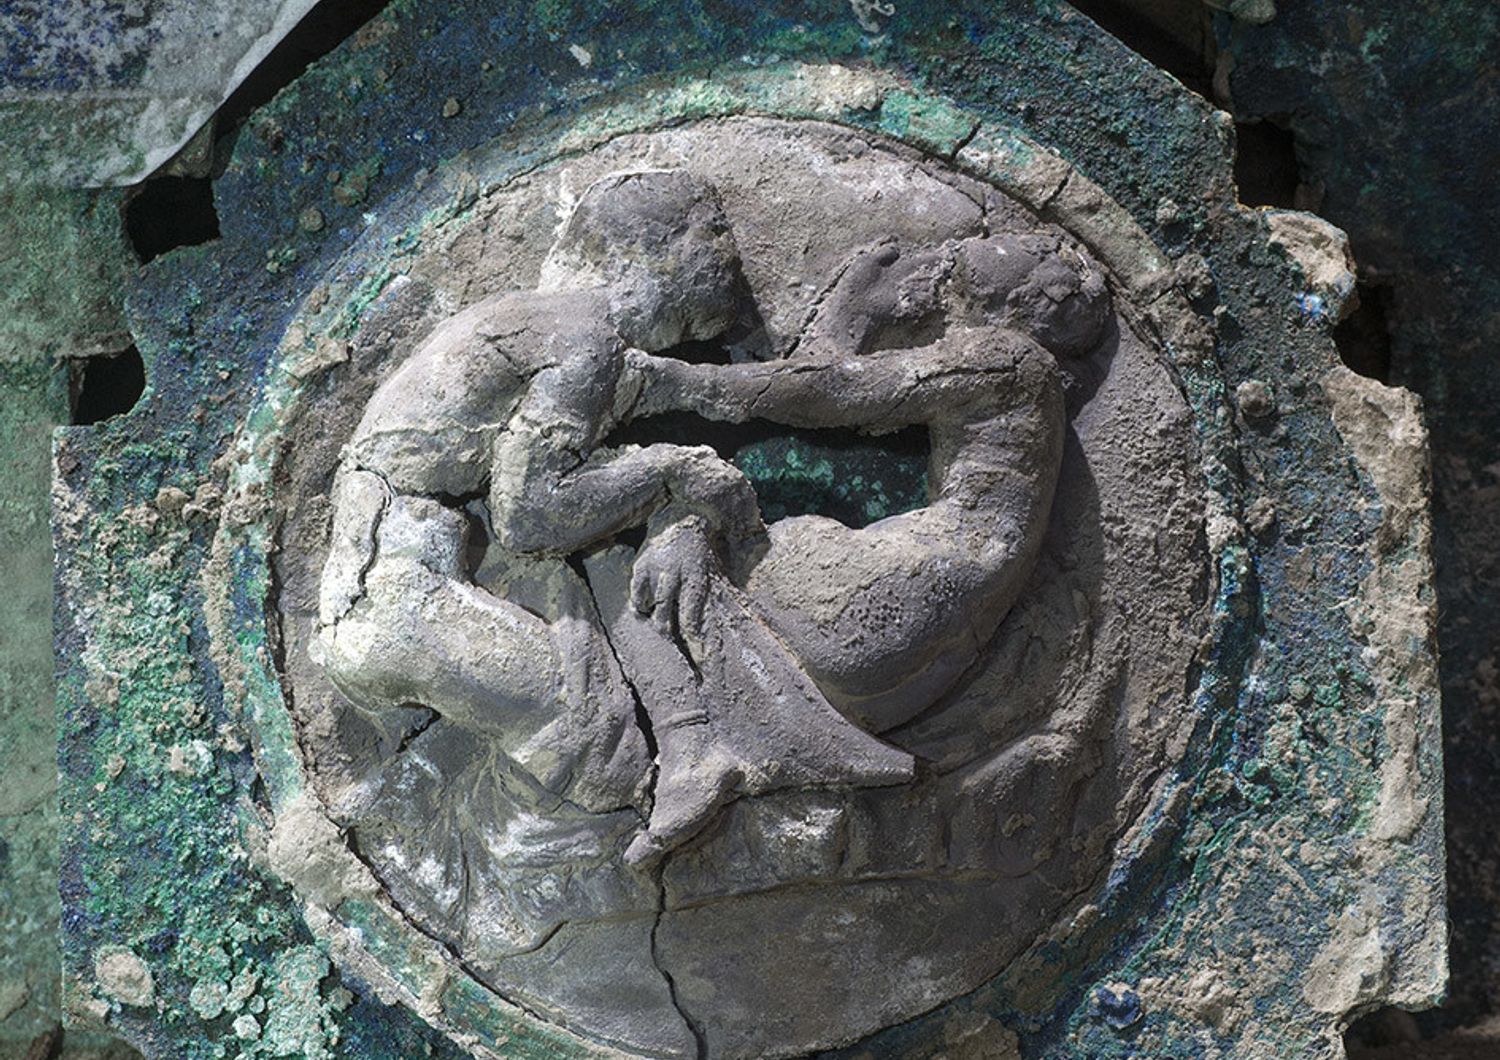 Un medaglione di bronzo del carro di Pompei